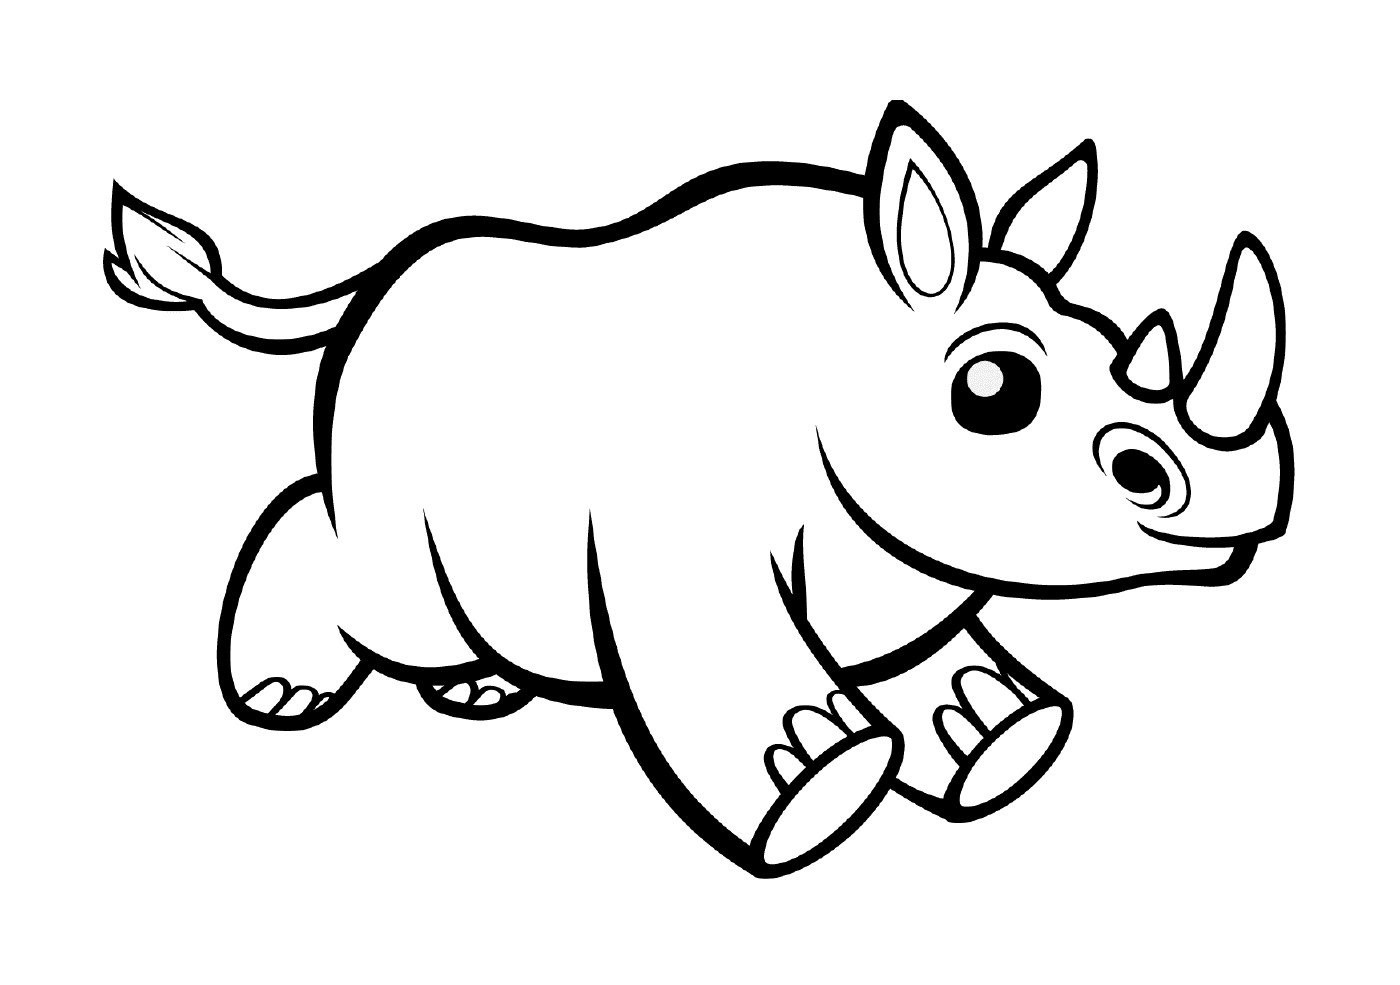  Un animal parecido a un rinoceronte 